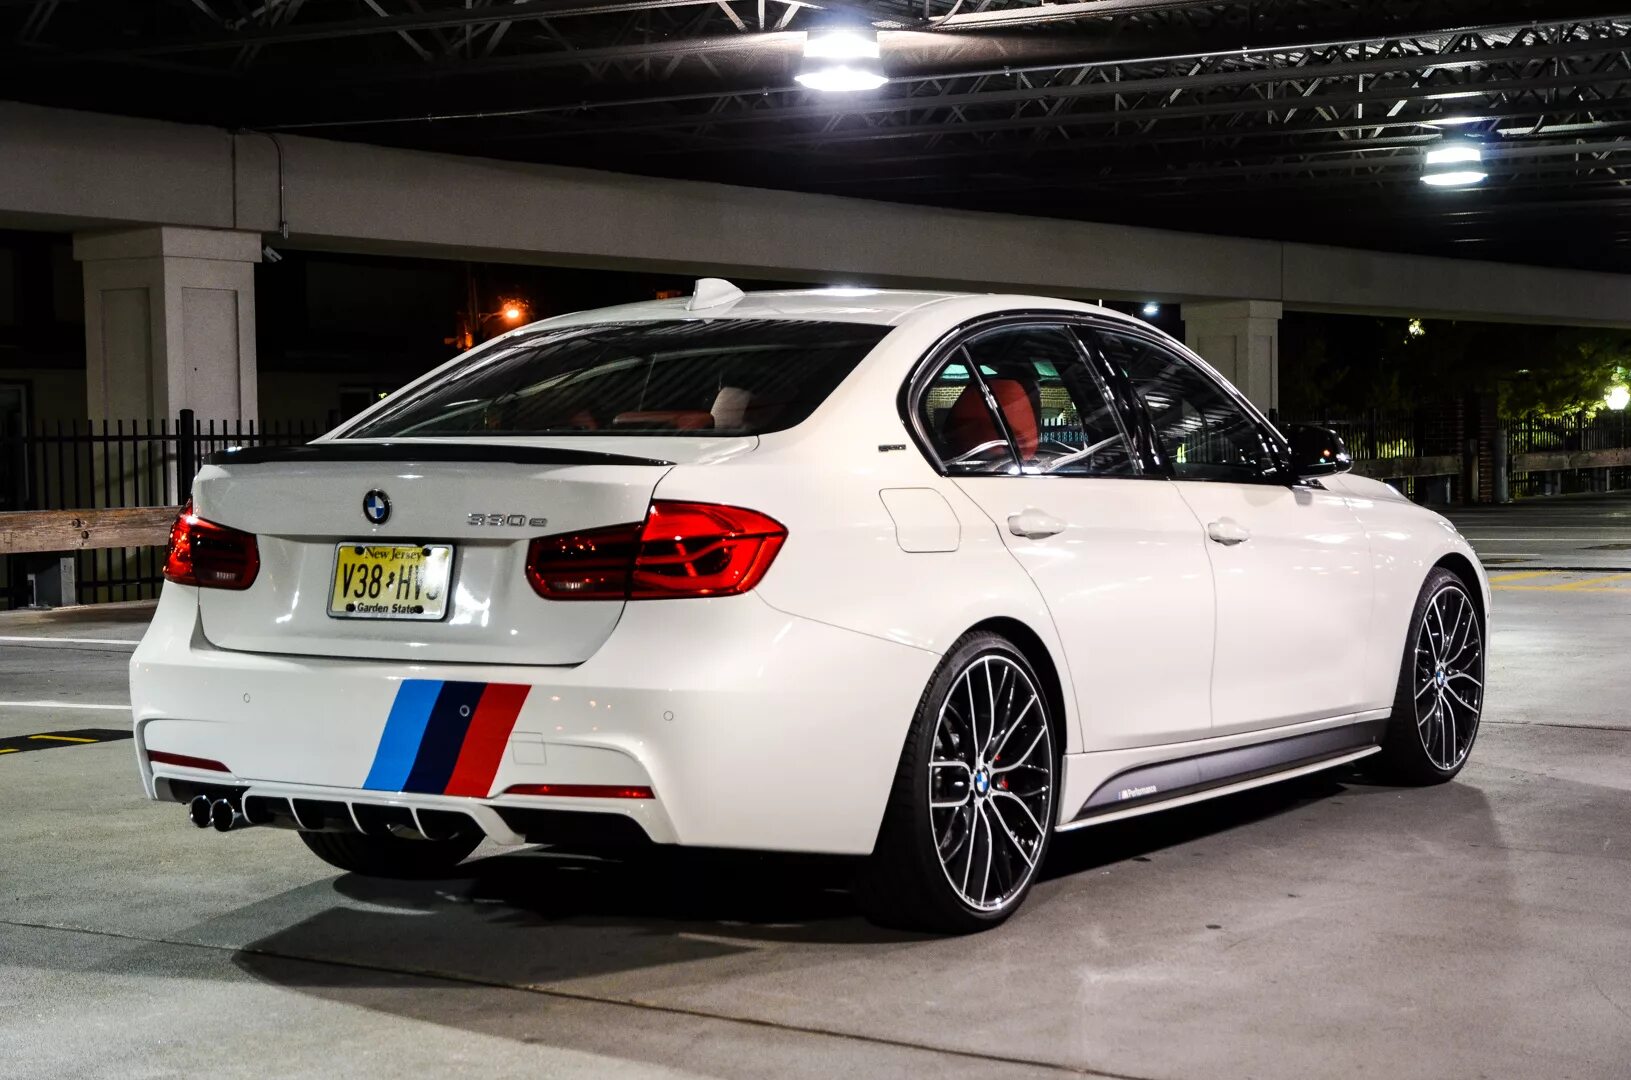 F performance. BMW f30 m Performance. BMW 330 f30 m Performance. BMW f30 m Performance 2017. BMW 624 M Performance.